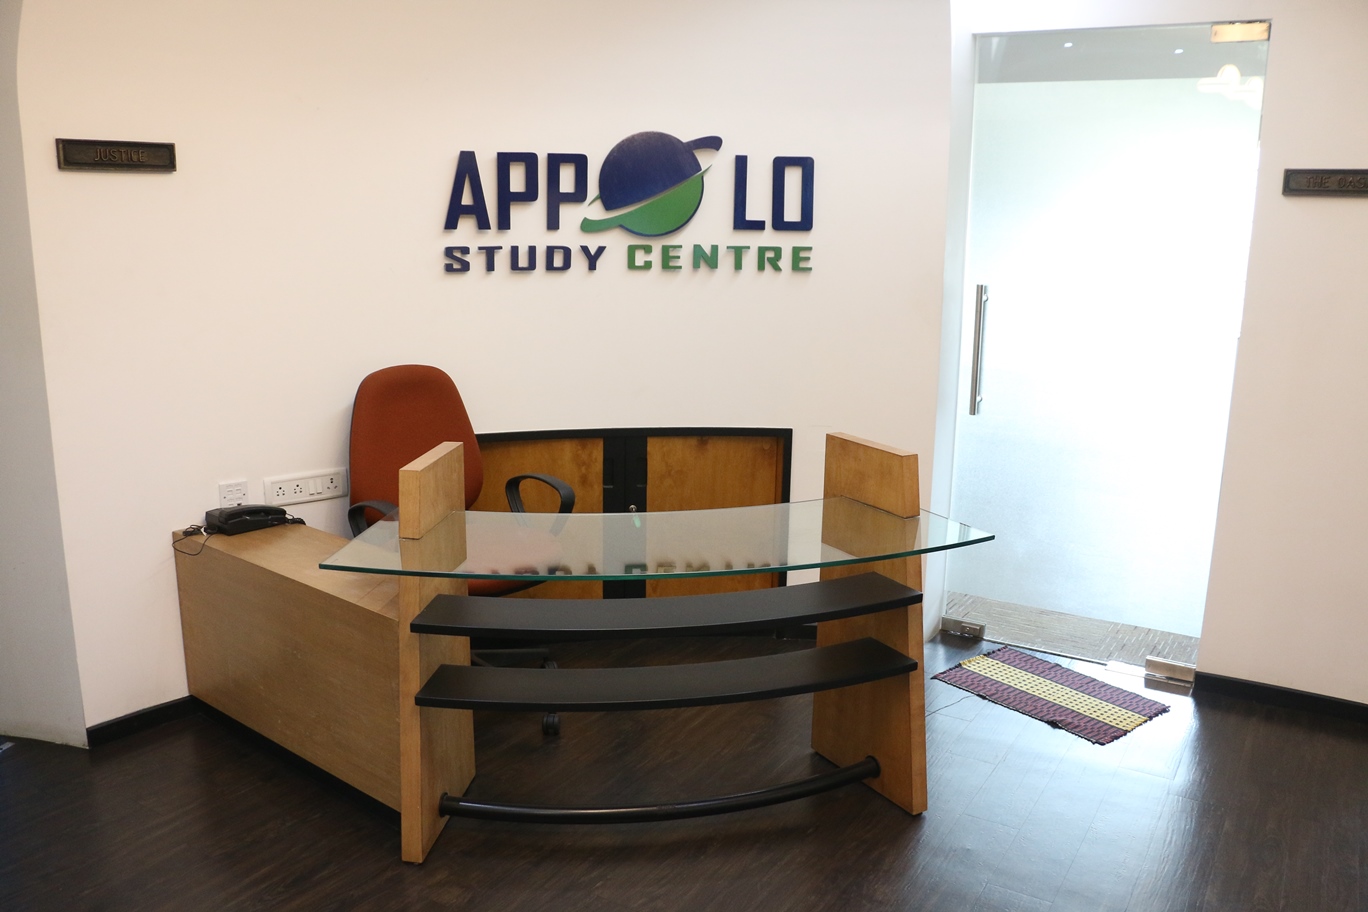 Appolo Study Center